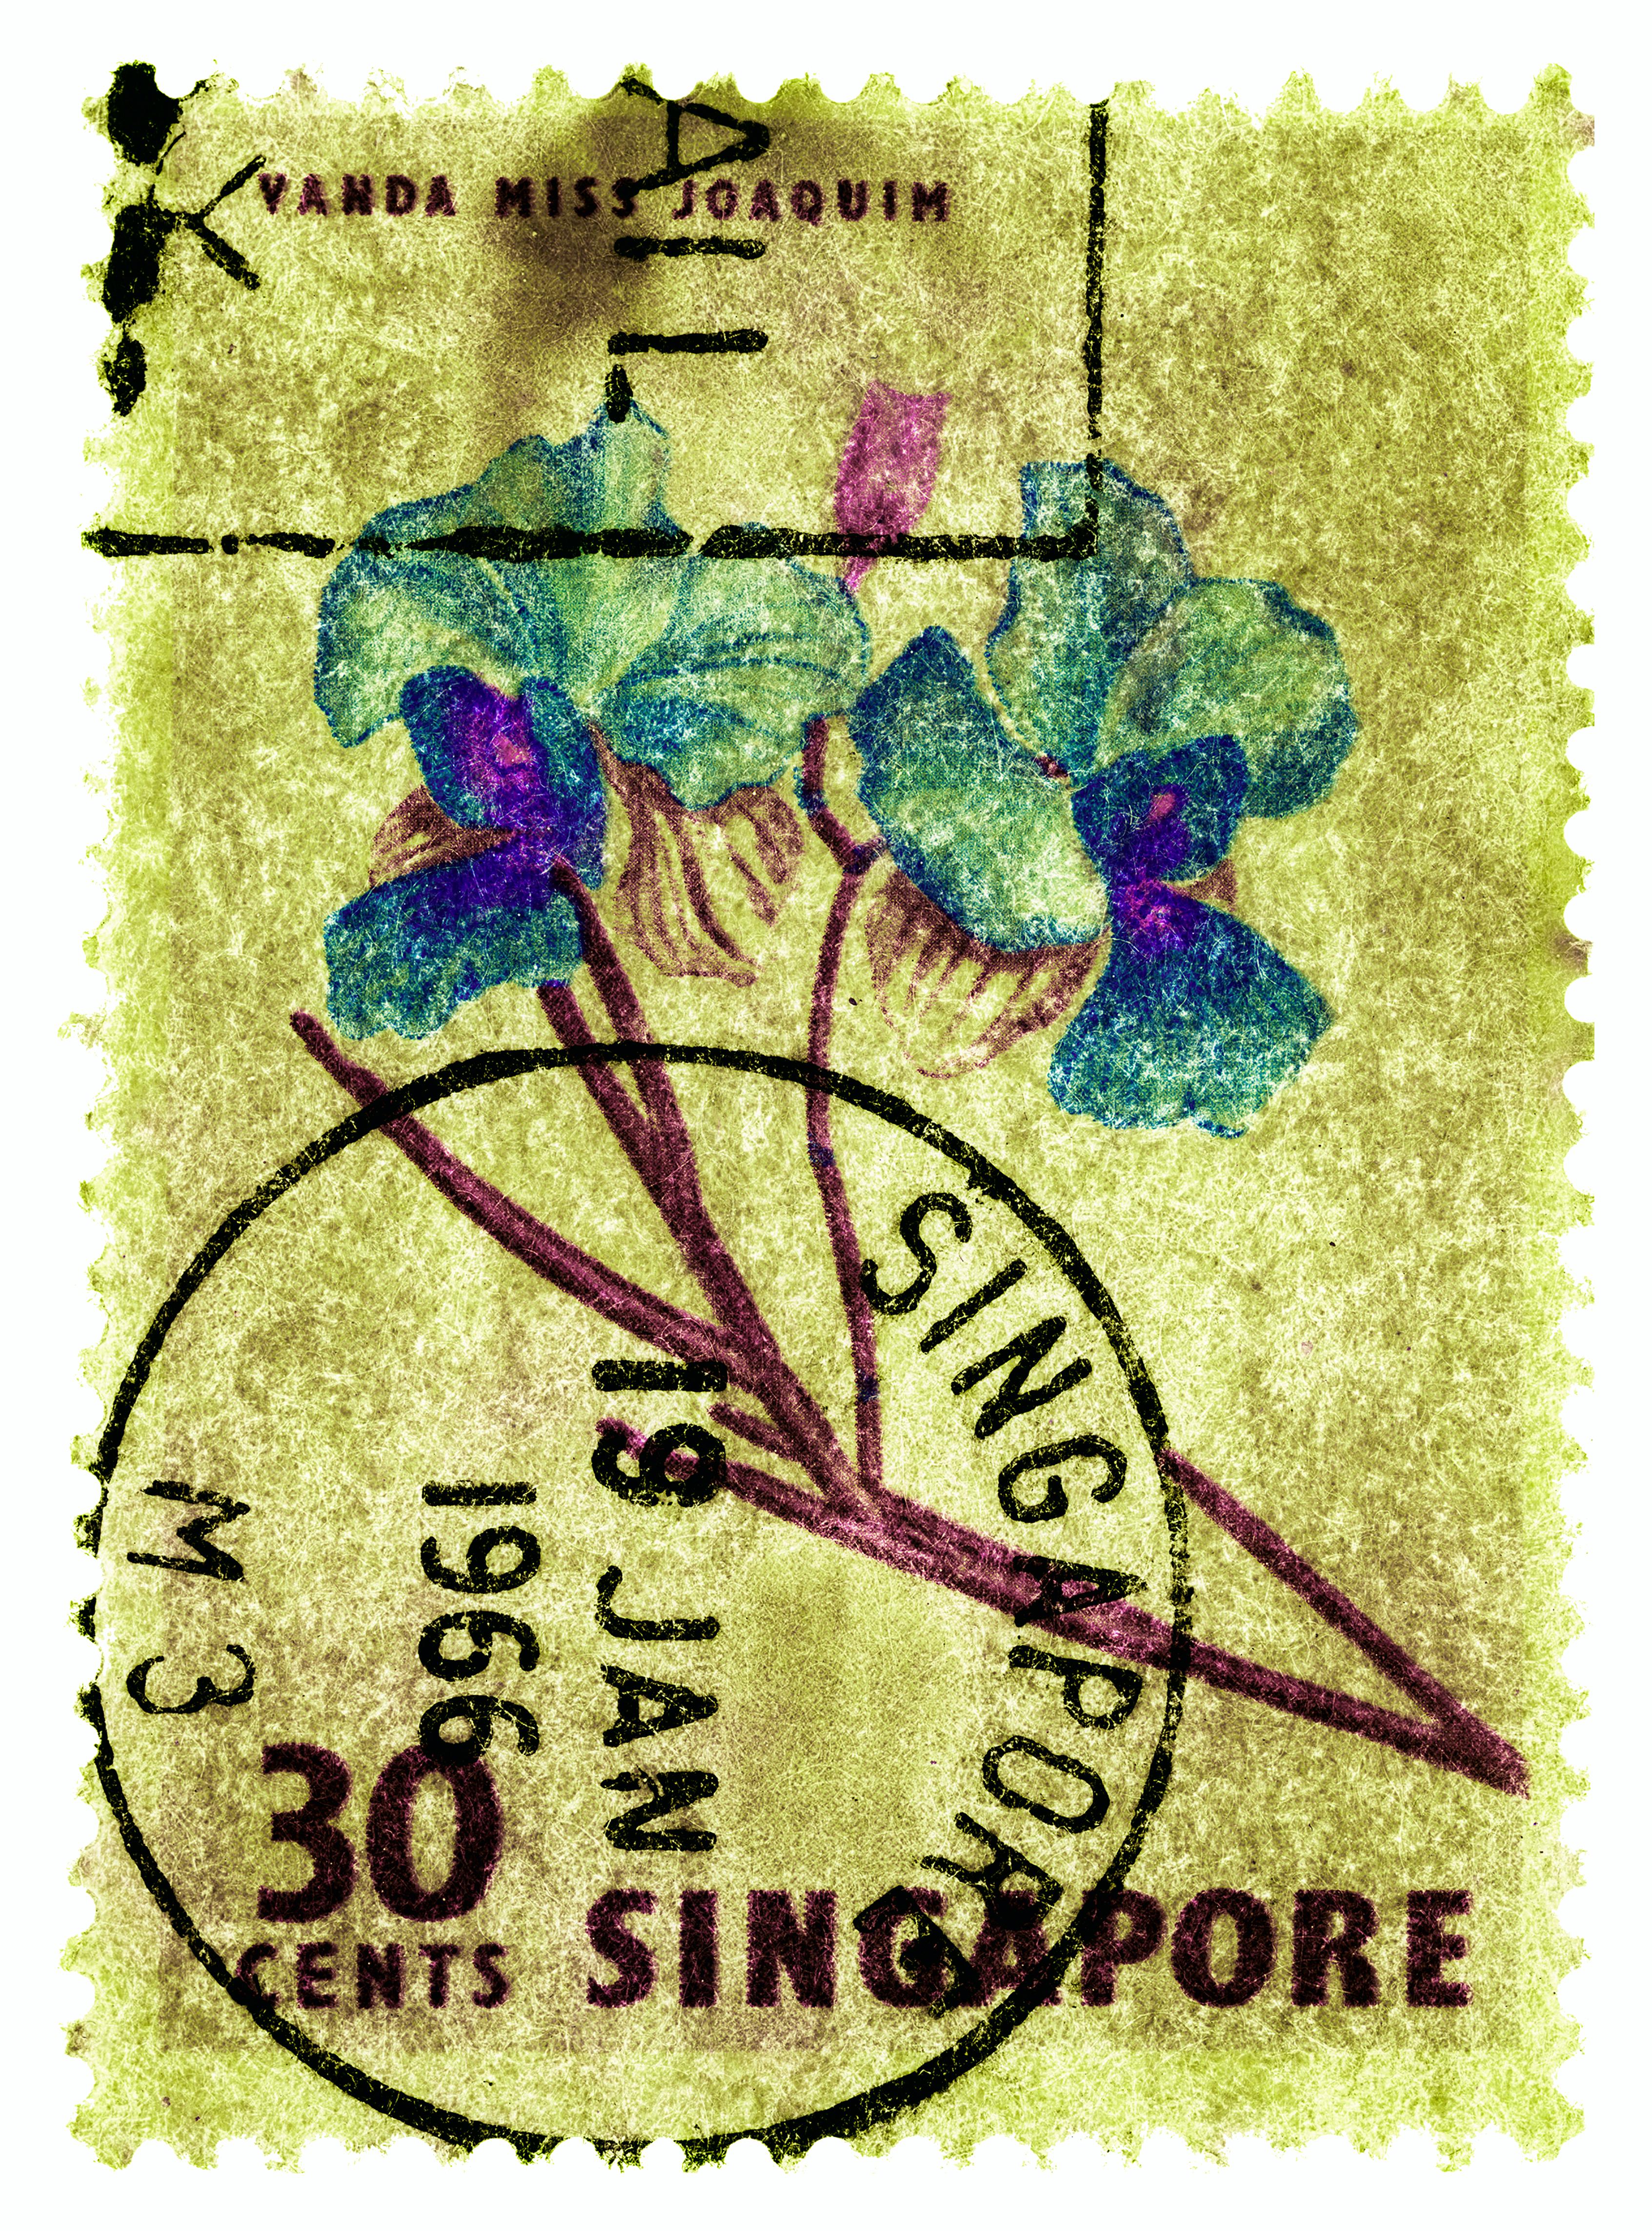 Singapore Stempel-Kollektion, 30c Singapur Vier-Blumen-Farbfoto (Grau), Print, von Heidler & Heeps